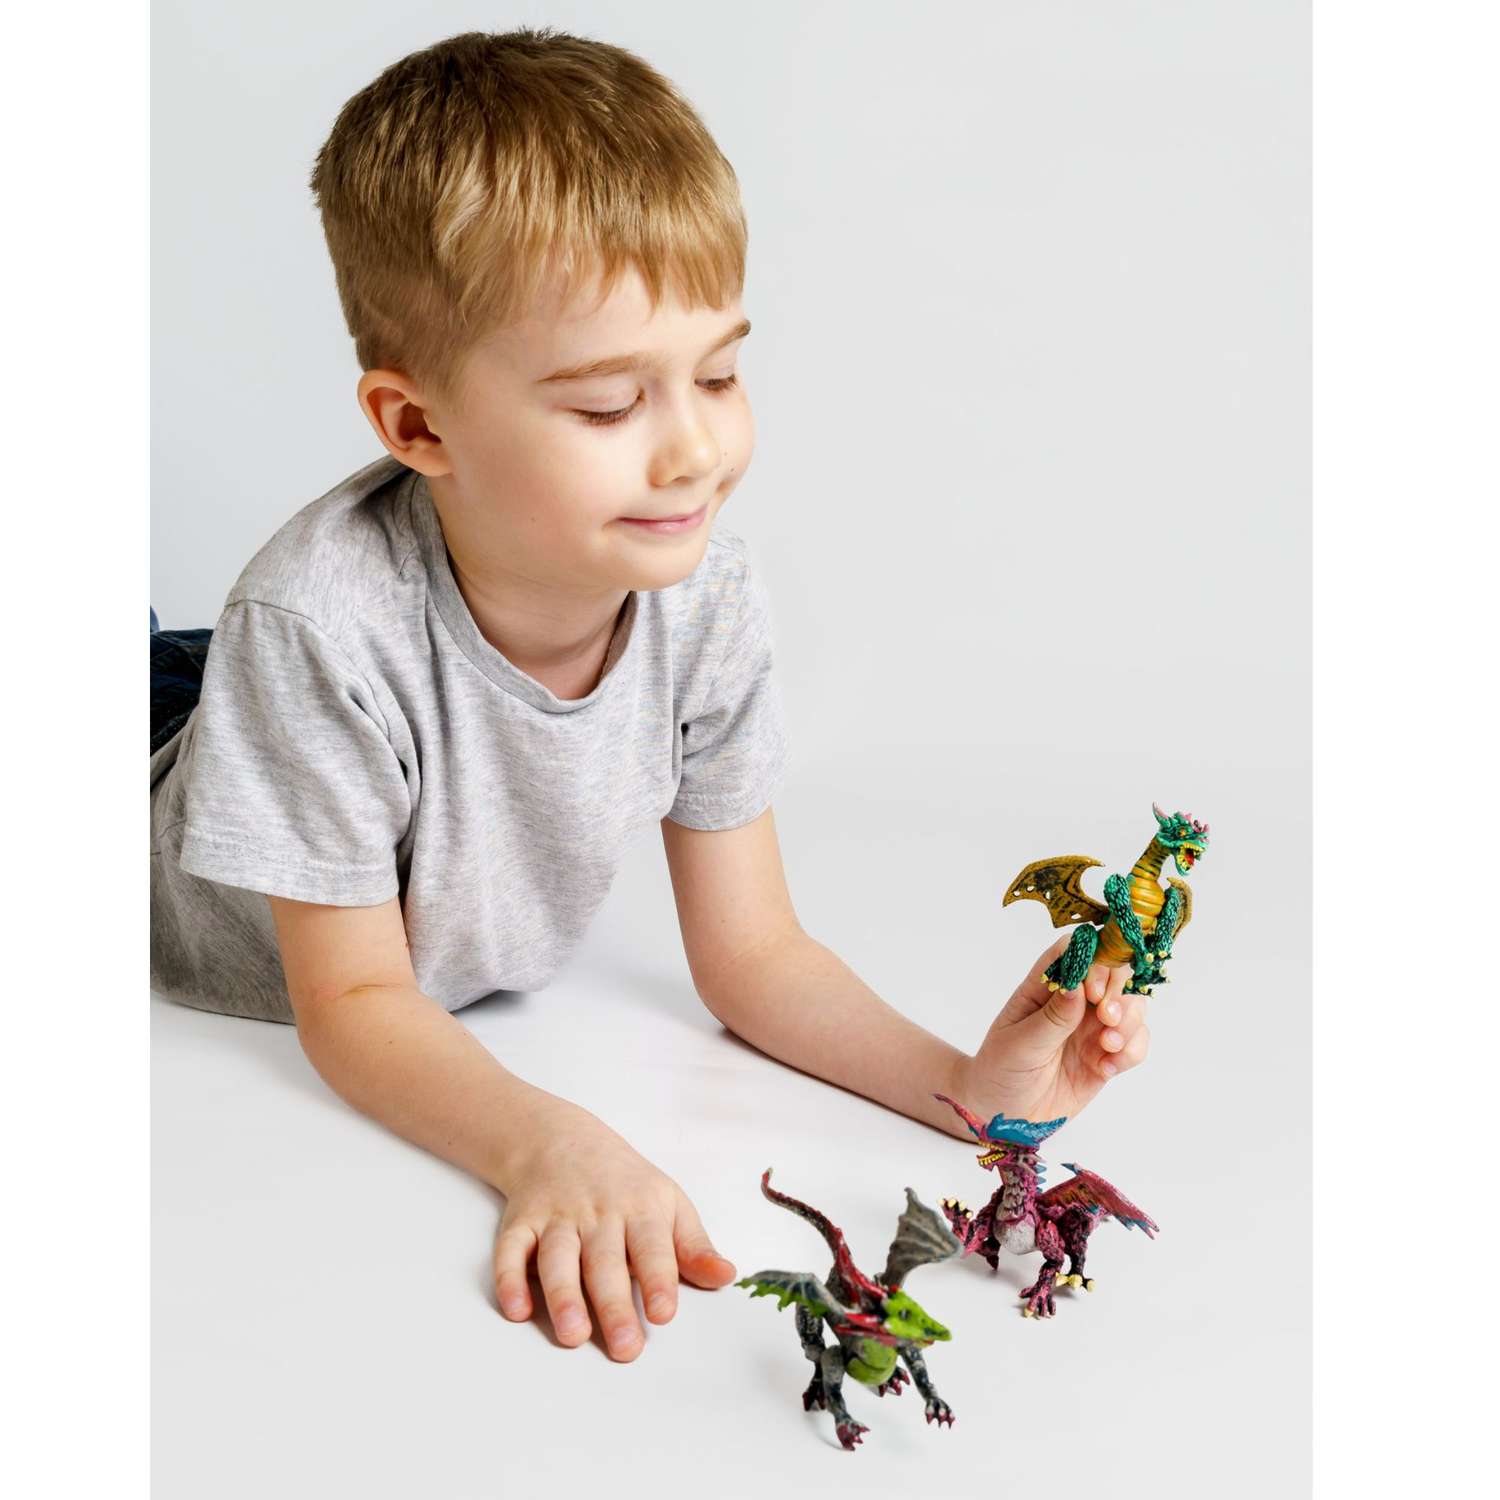 Фигурки BATTLETIME три дракона для детей развивающие коллекционные - фото 6